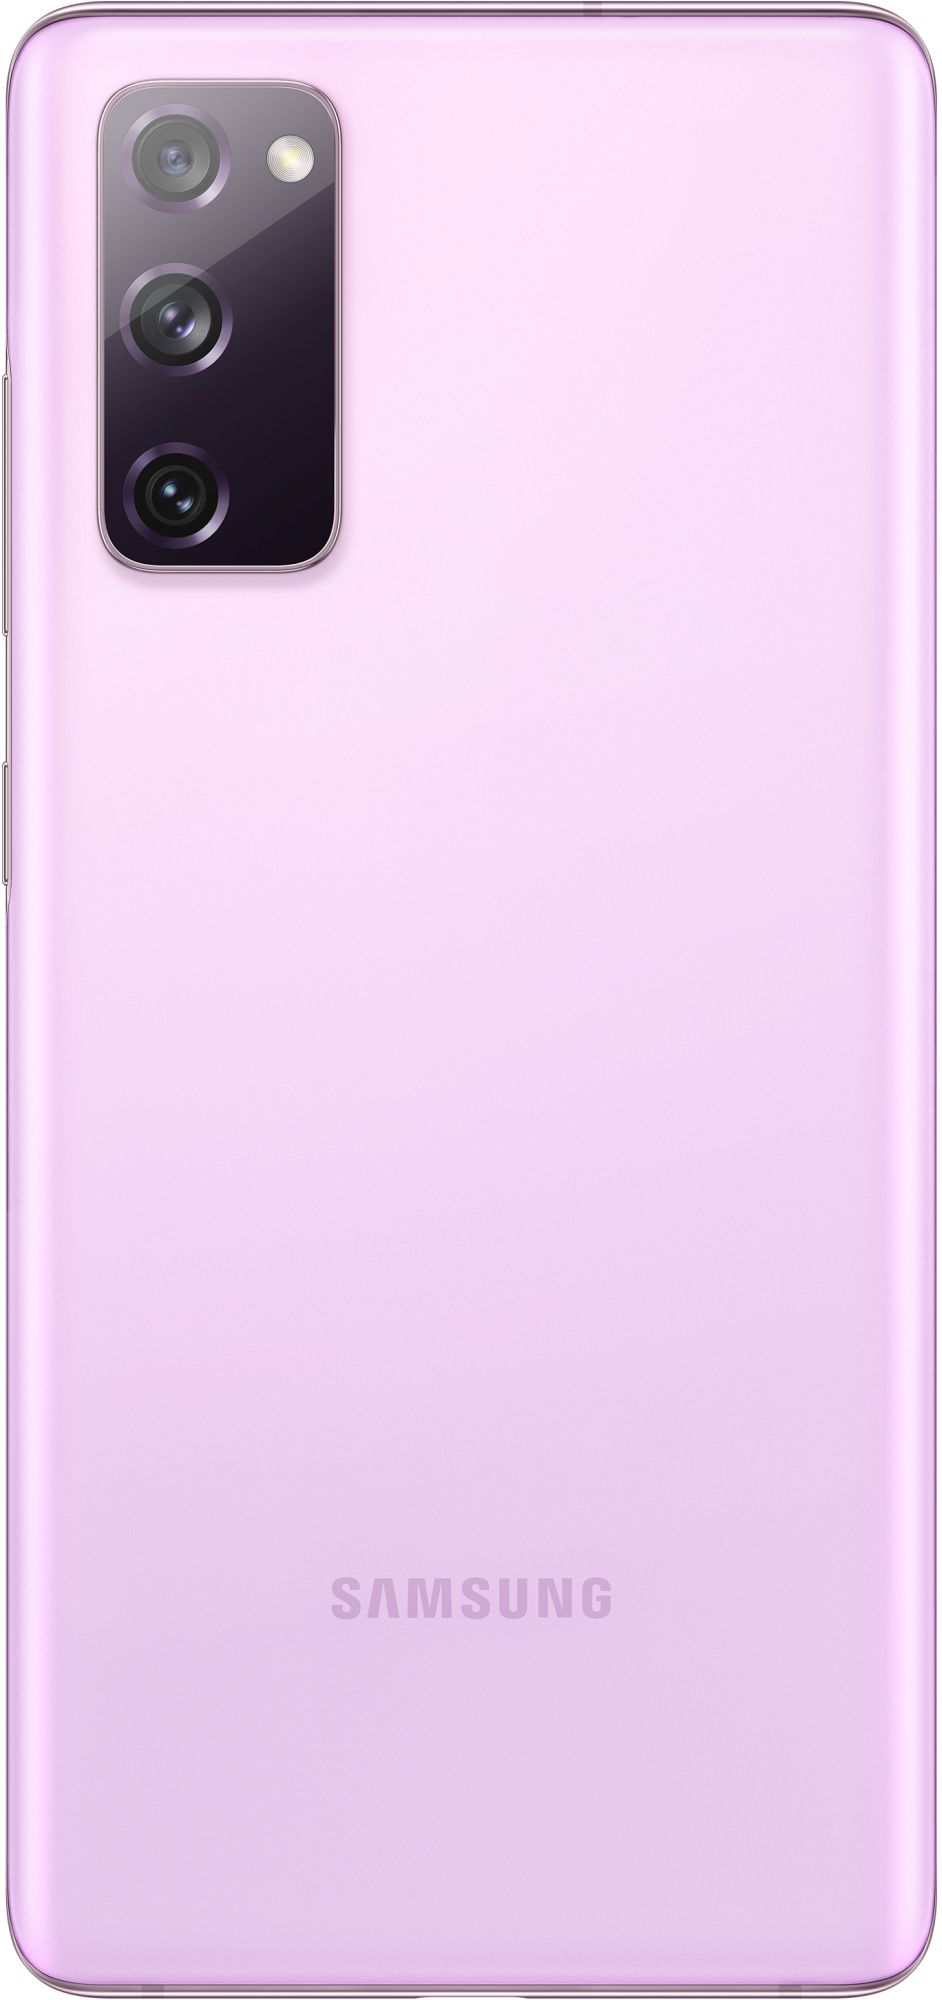 Samsung Galaxy S20 FE 128GB lavender